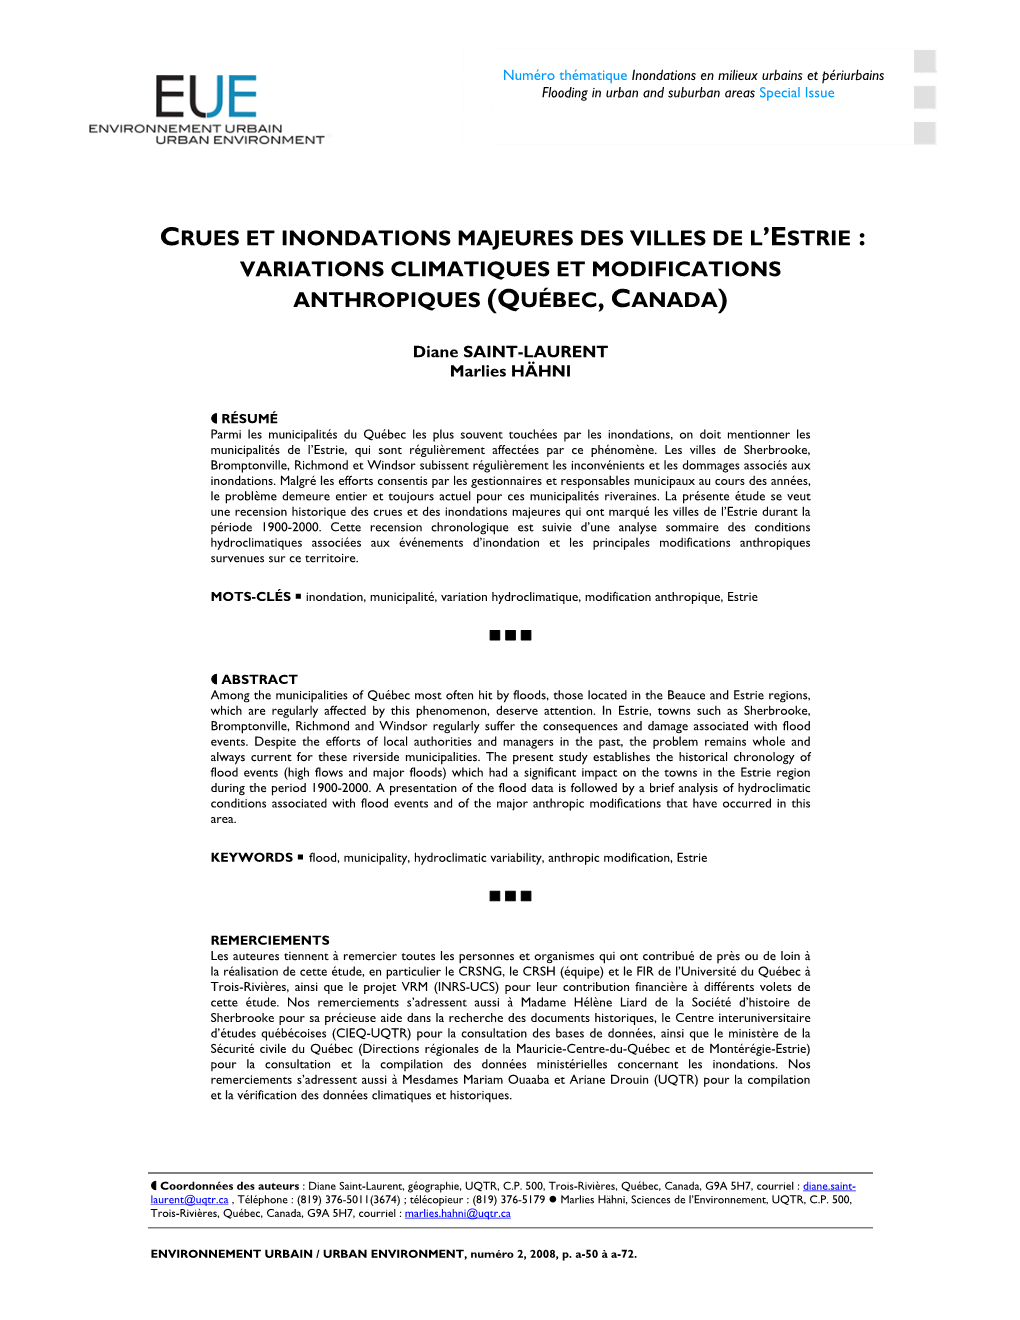 Crues Et Inondations Majeures Des Villes De L’Estrie : Variations Climatiques Et Modifications Anthropiques (Québec, Canada)